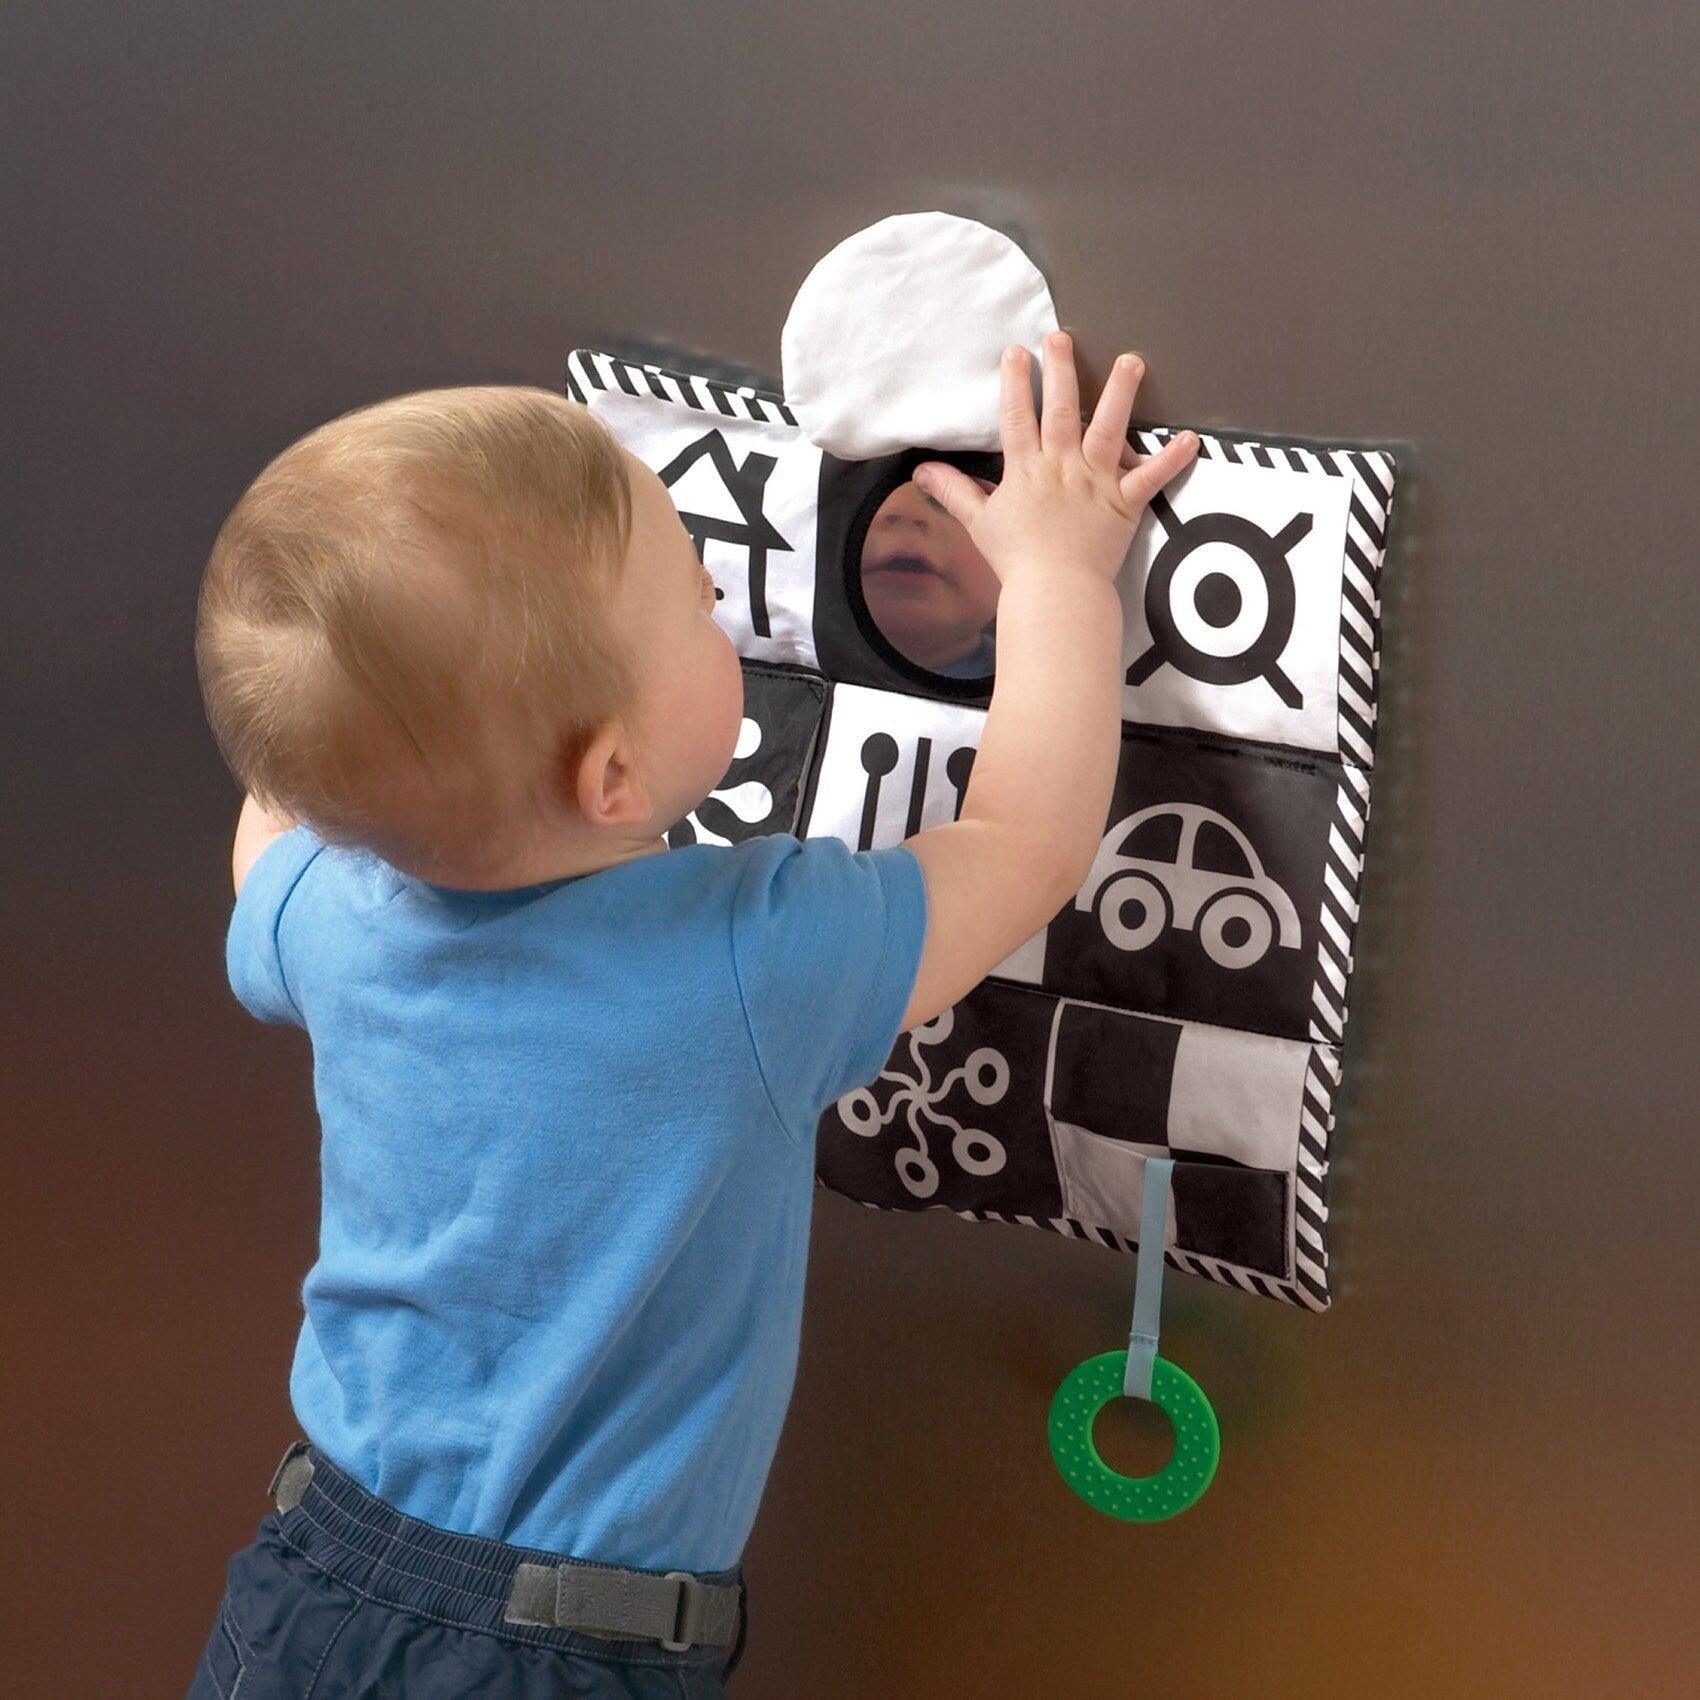 Manheteno žaislas: kontrastingas edukacinis kilimėlis kūdikiams Wimmer-Ferguson